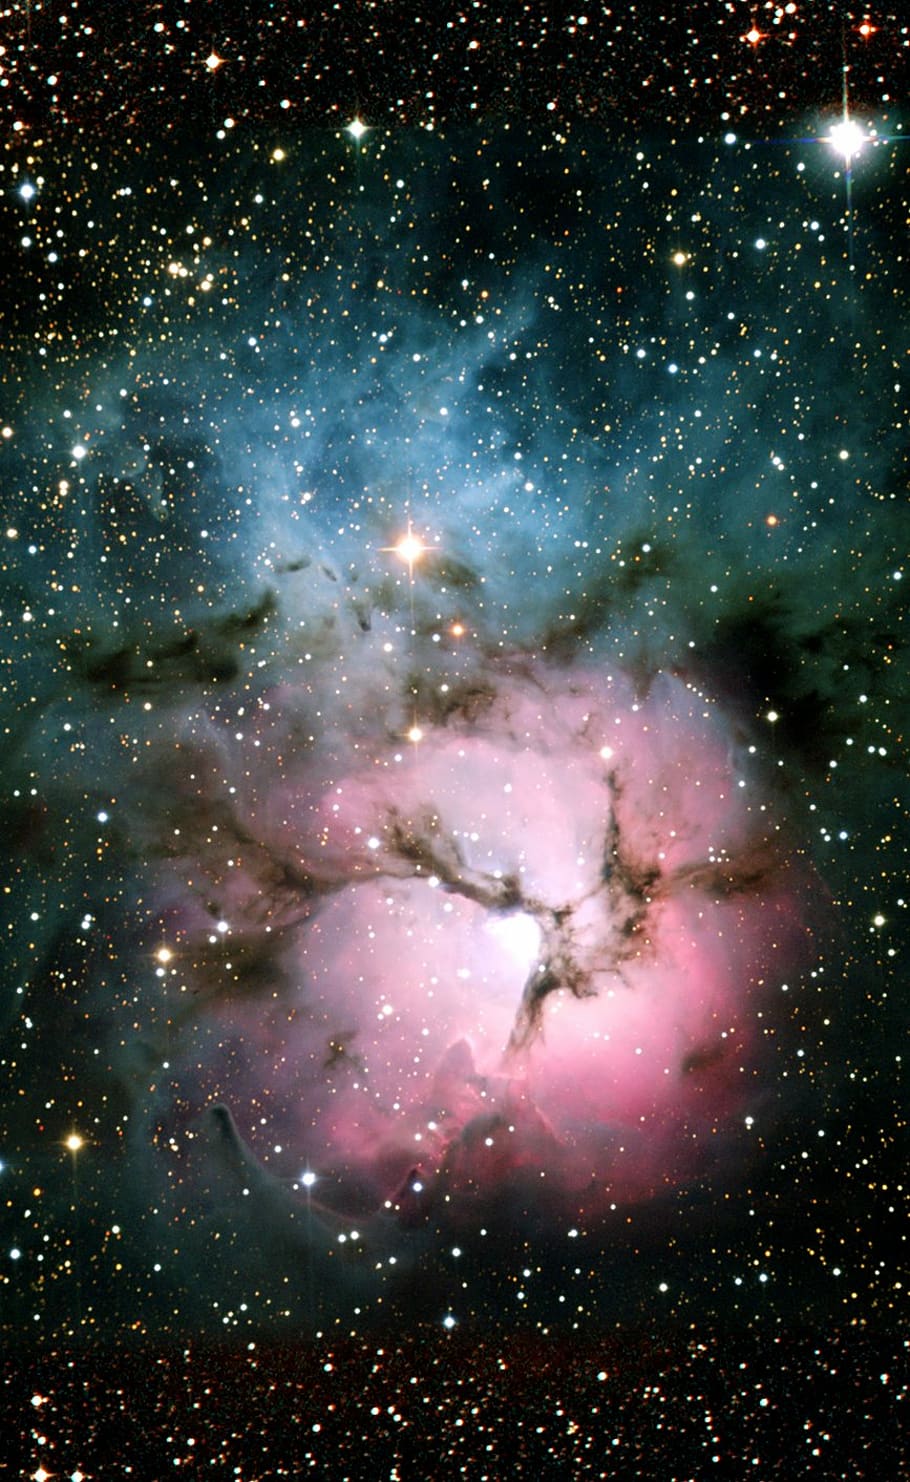 nebula trifid, berantakan 20, nGC 6514, nebula emisi, nebula refleksi, konstelasi sagitarius, galaksi, langit berbintang, ruang, alam semesta